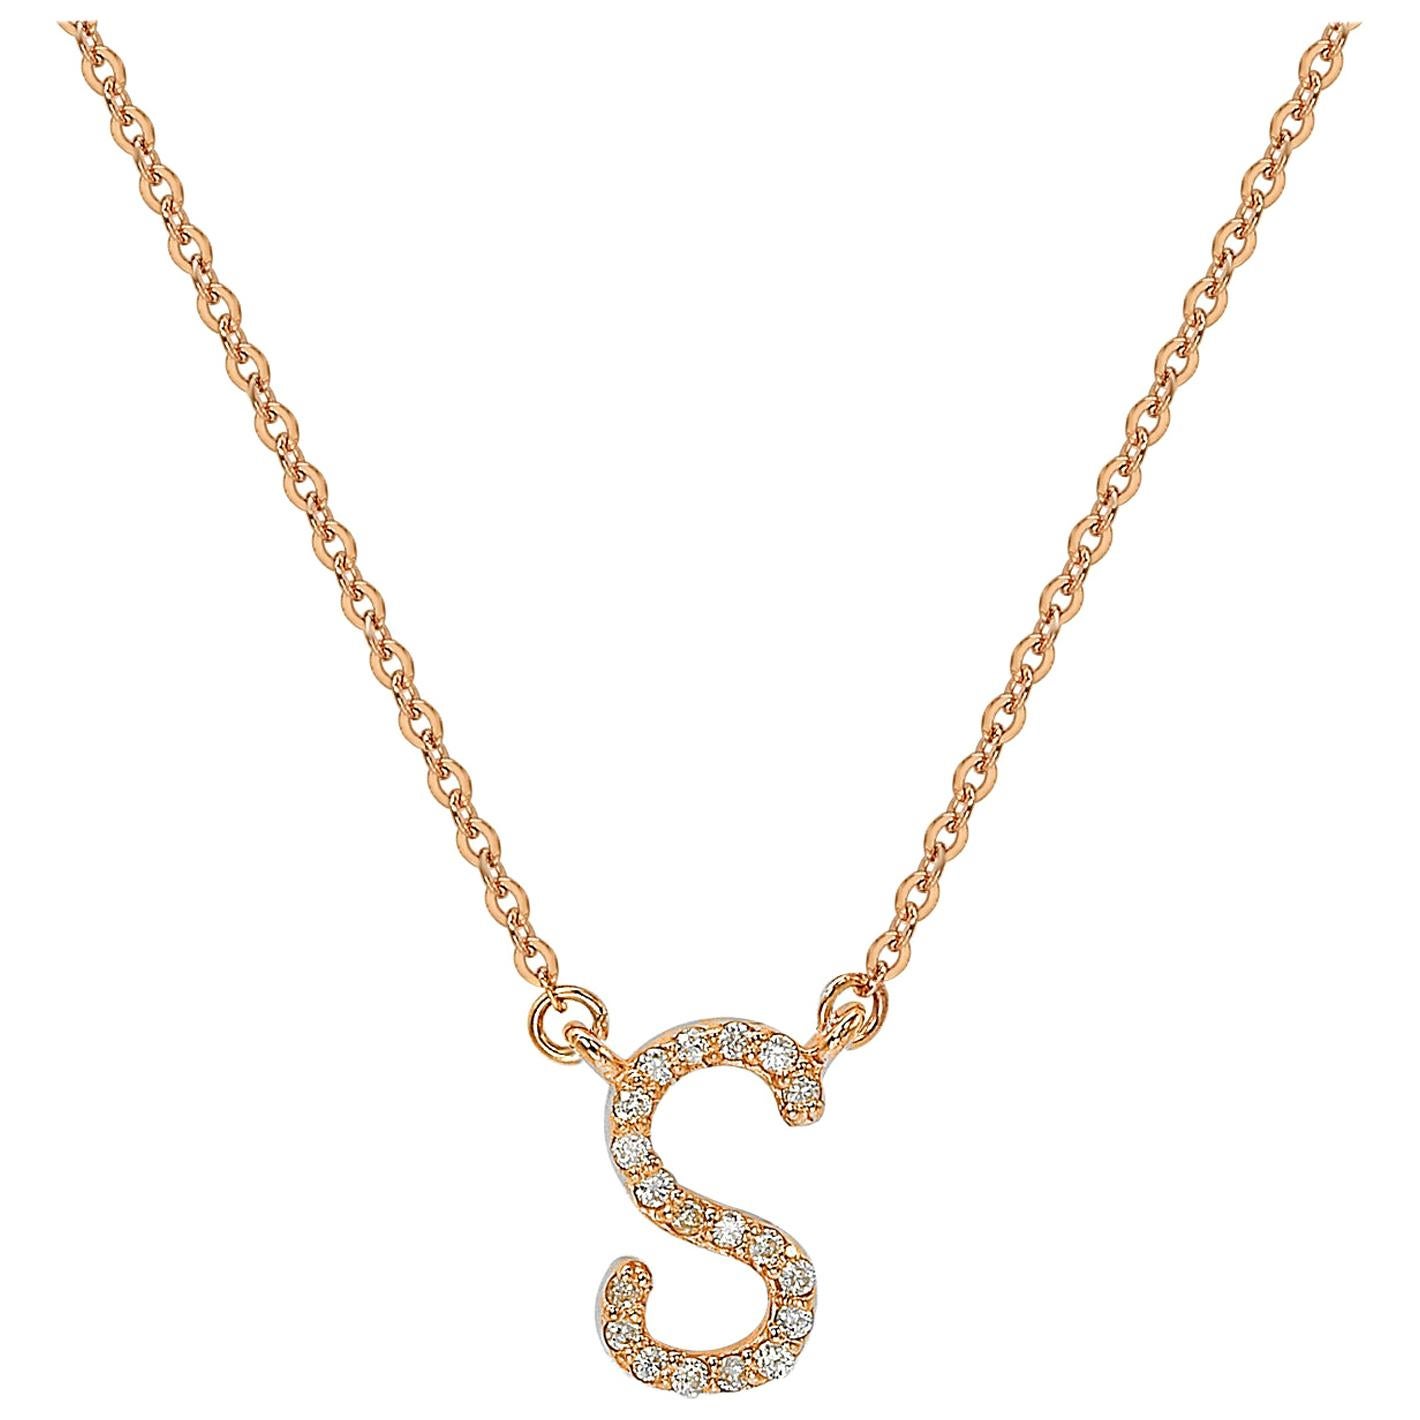 Suzy Levian Collier initial lettres en or rose 14 carats avec diamants blancs de 0,10 carat